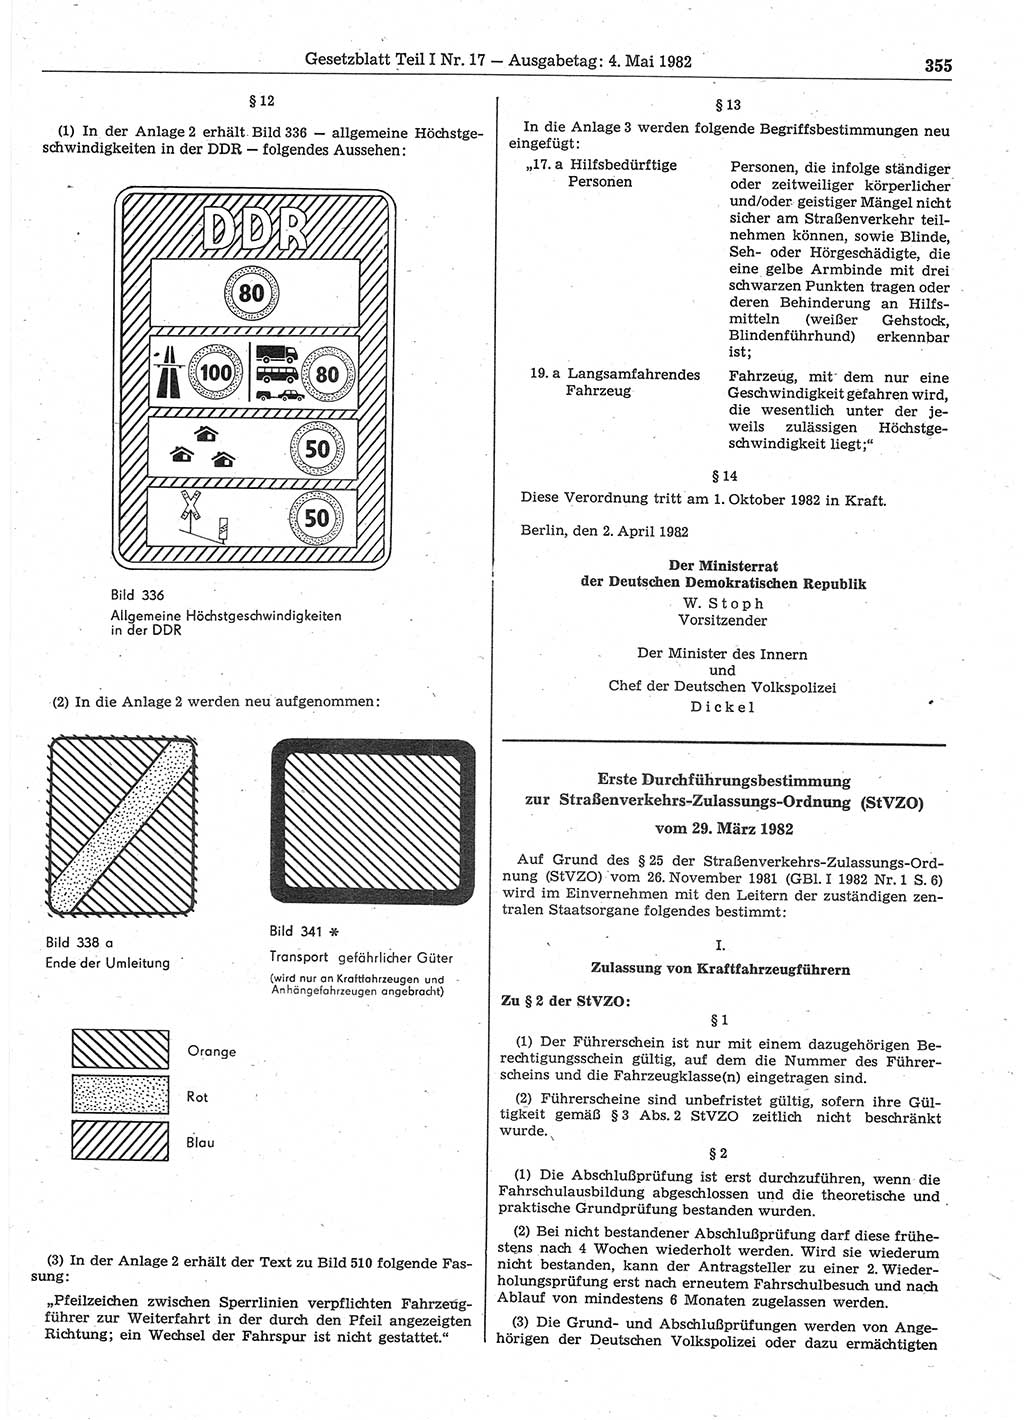 Gesetzblatt (GBl.) der Deutschen Demokratischen Republik (DDR) Teil Ⅰ 1982, Seite 355 (GBl. DDR Ⅰ 1982, S. 355)